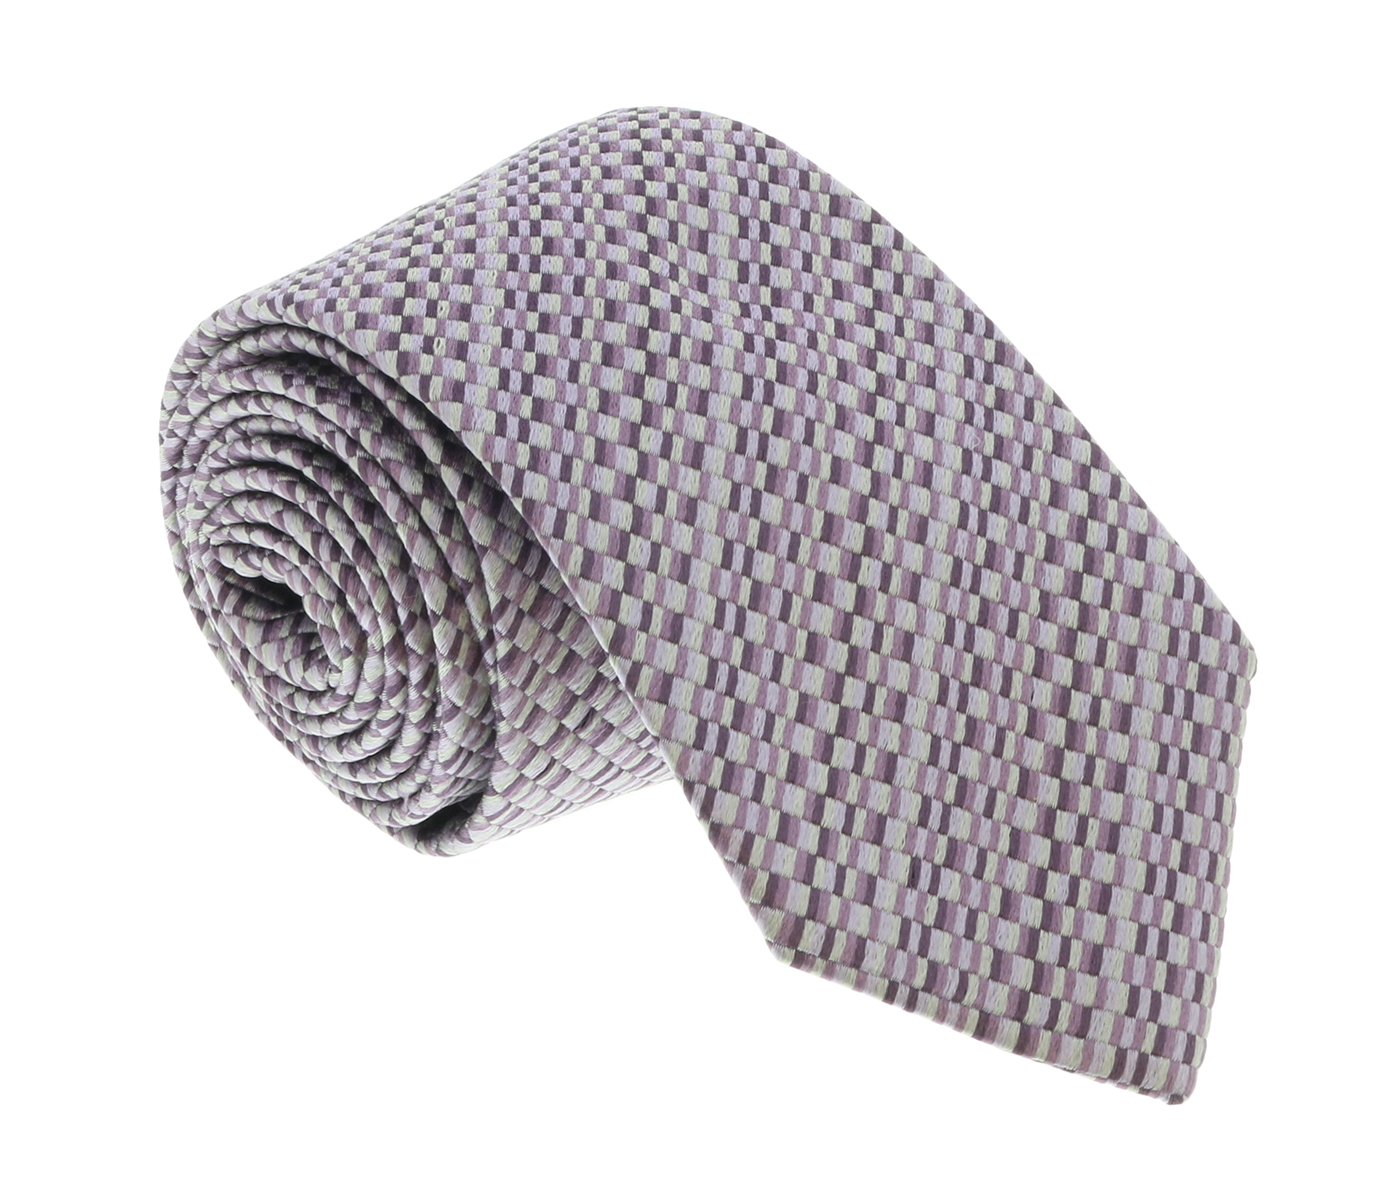 Missoni U5299 Purple/Silver Check 100% Silk Tie for mens - image 1 of 4